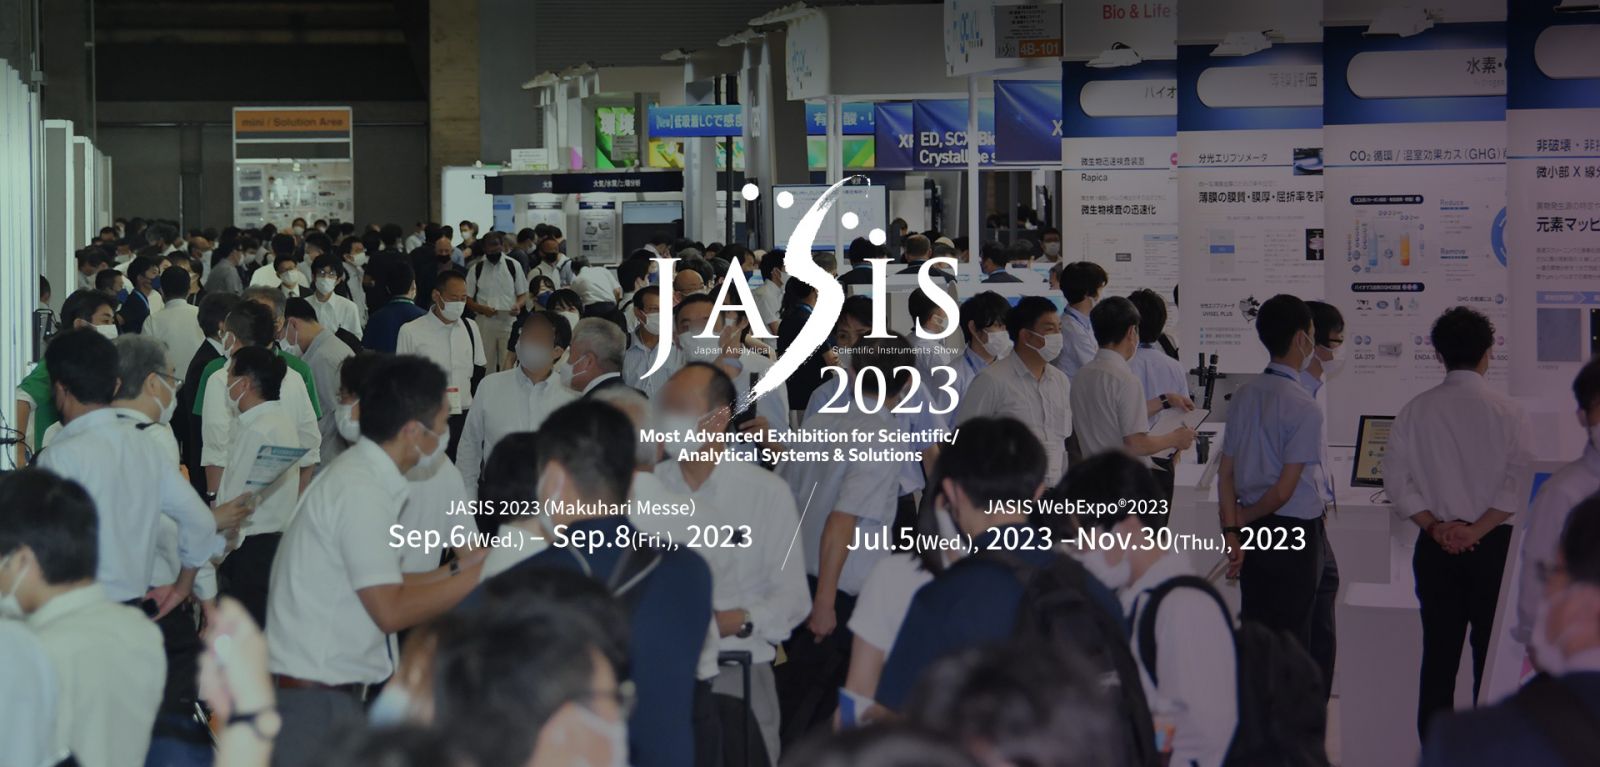 Triển lãm JASIS 2023